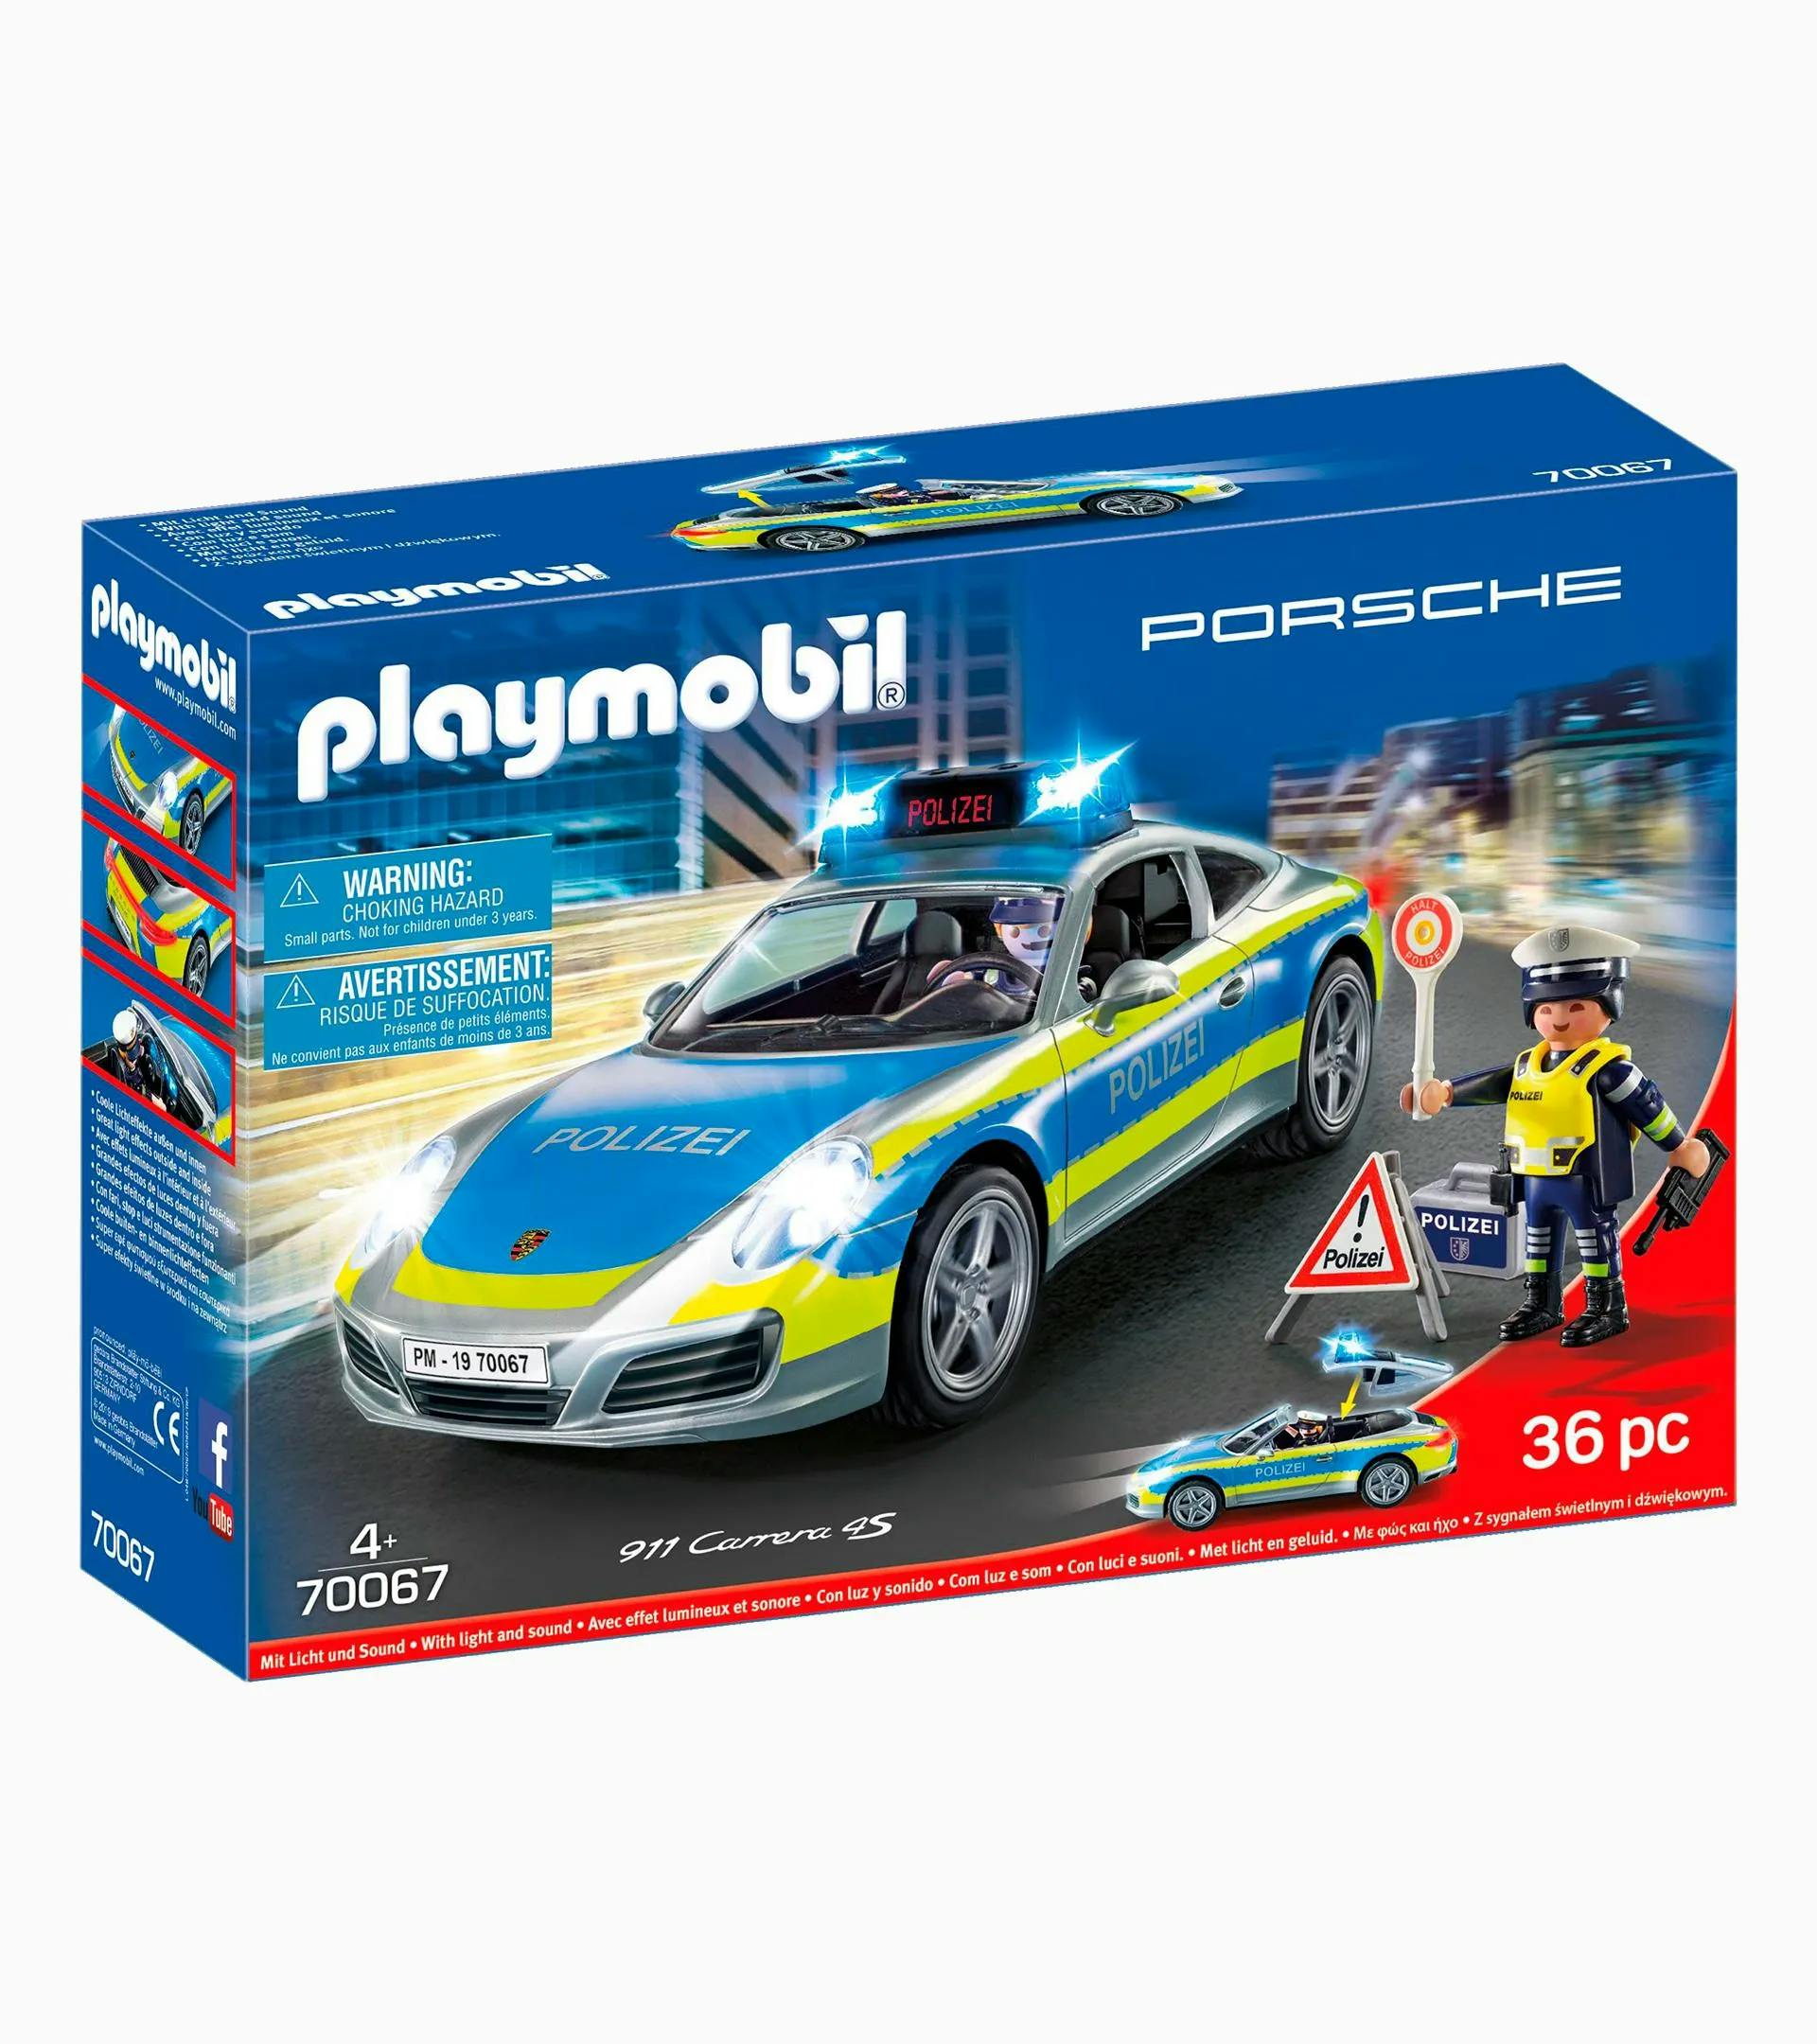 PLAYMOBIL playset – police